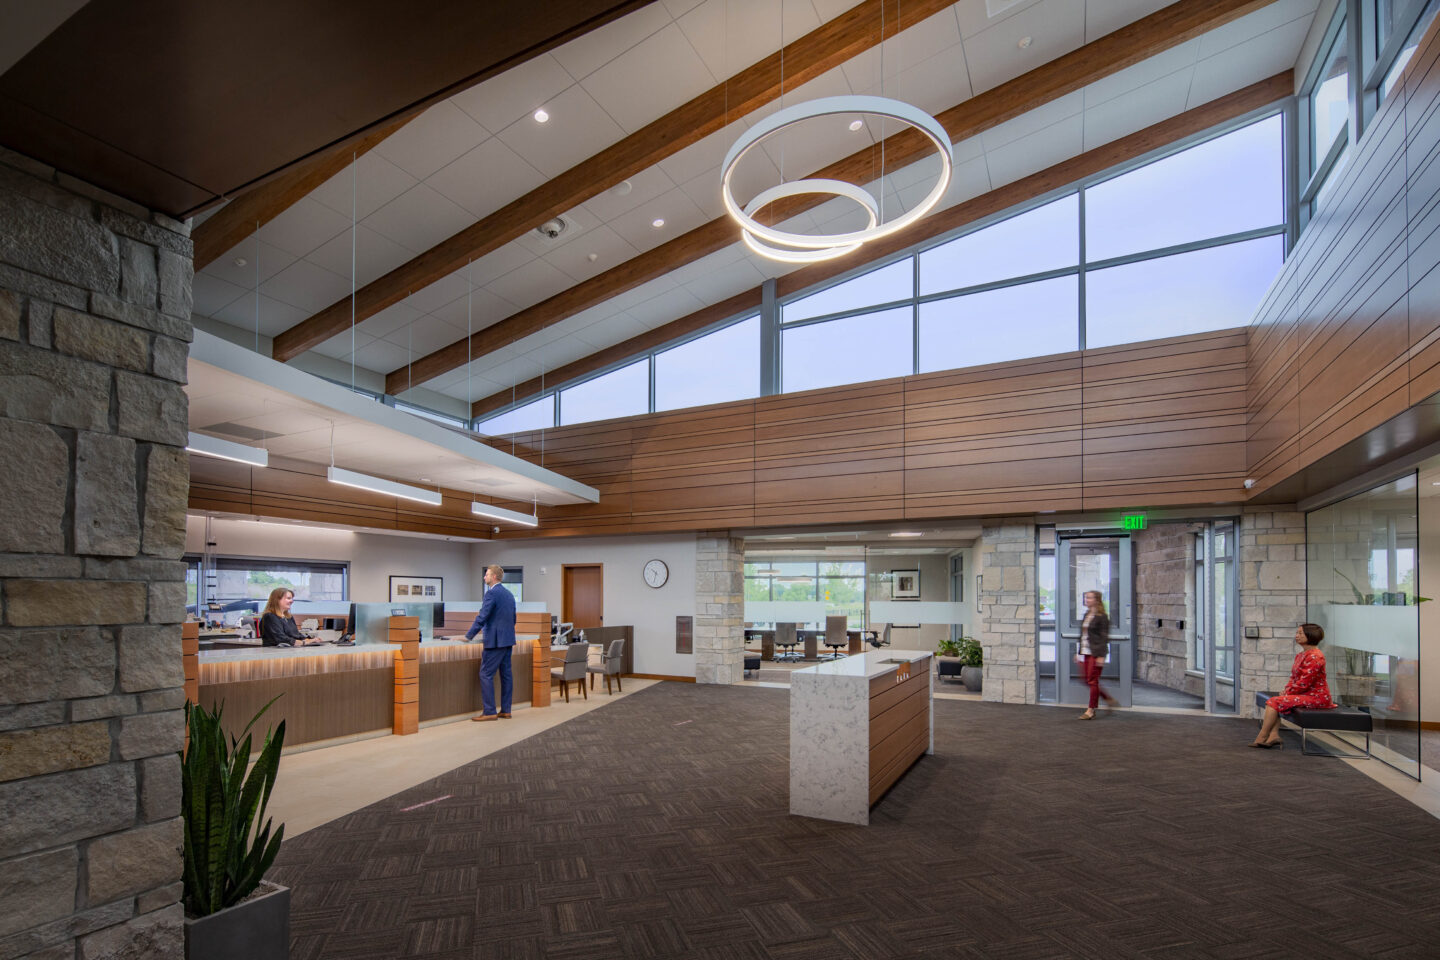 Modern, circular light fixtures illuminate an open, windowed bank lobby